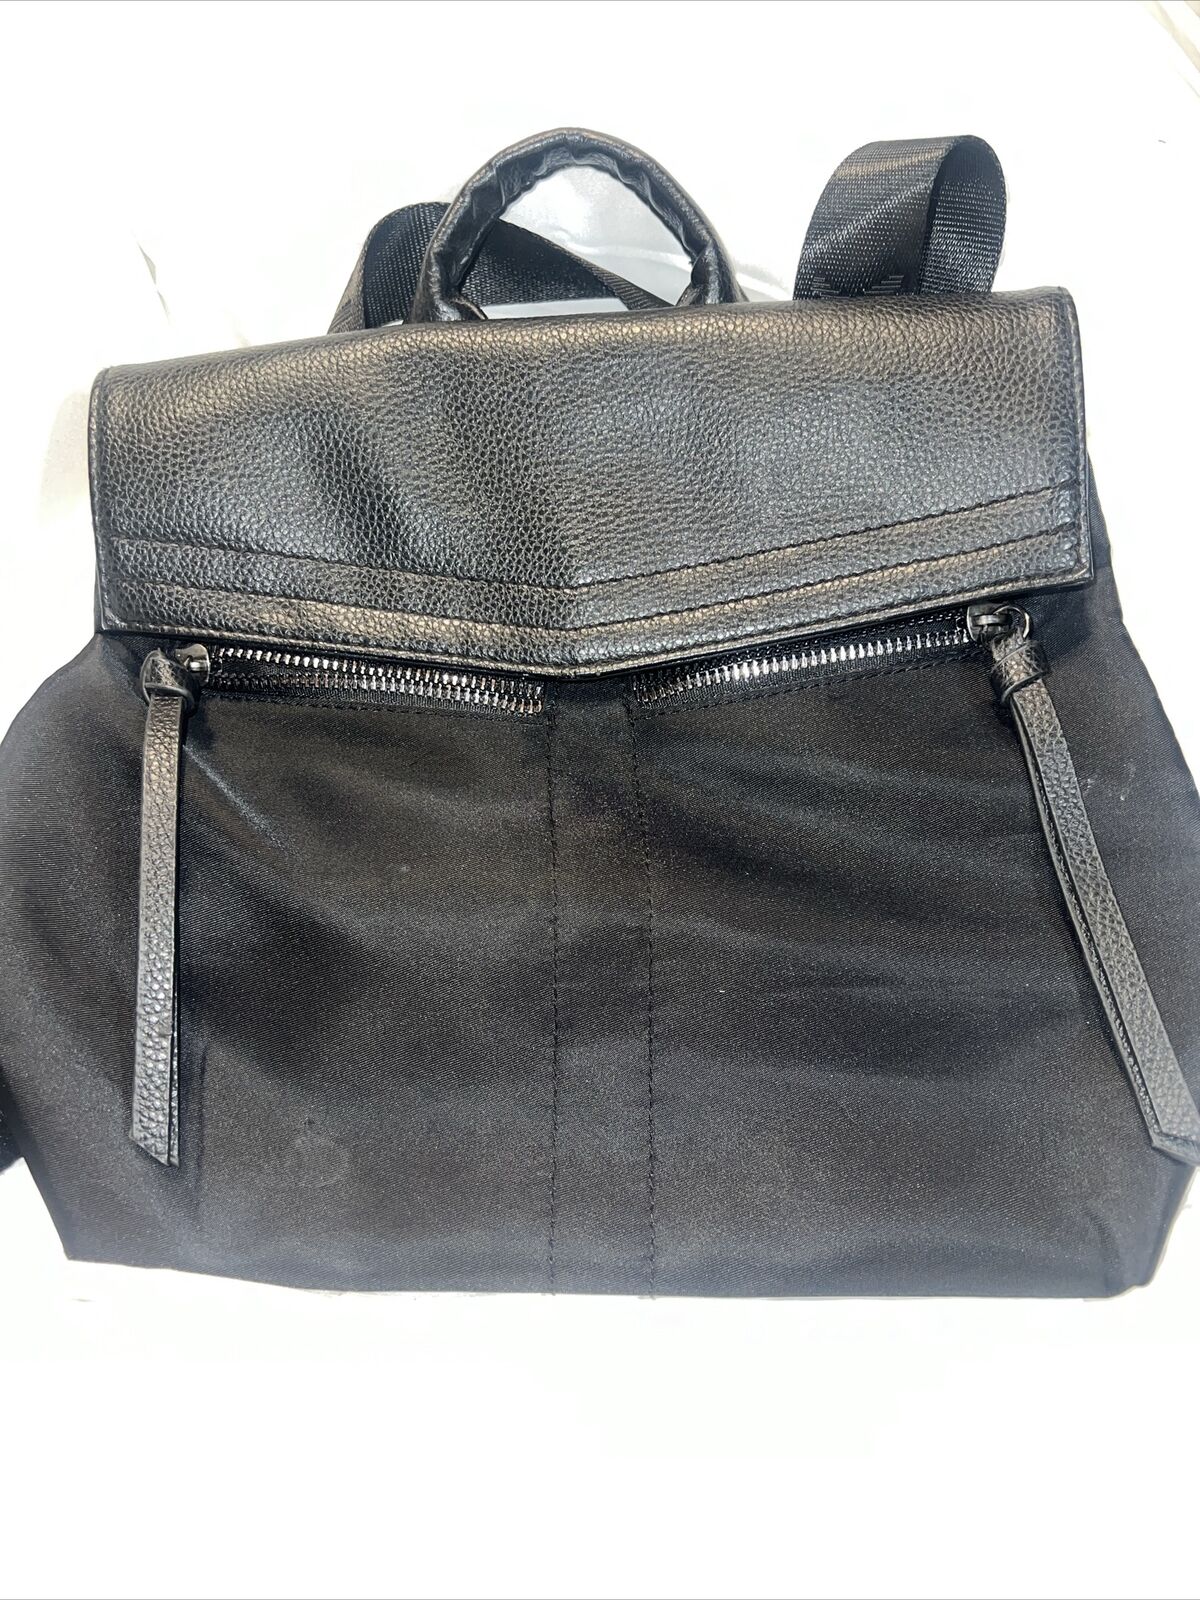 Botkier New York Trigger Mini Backpack Black Leather/Nylon